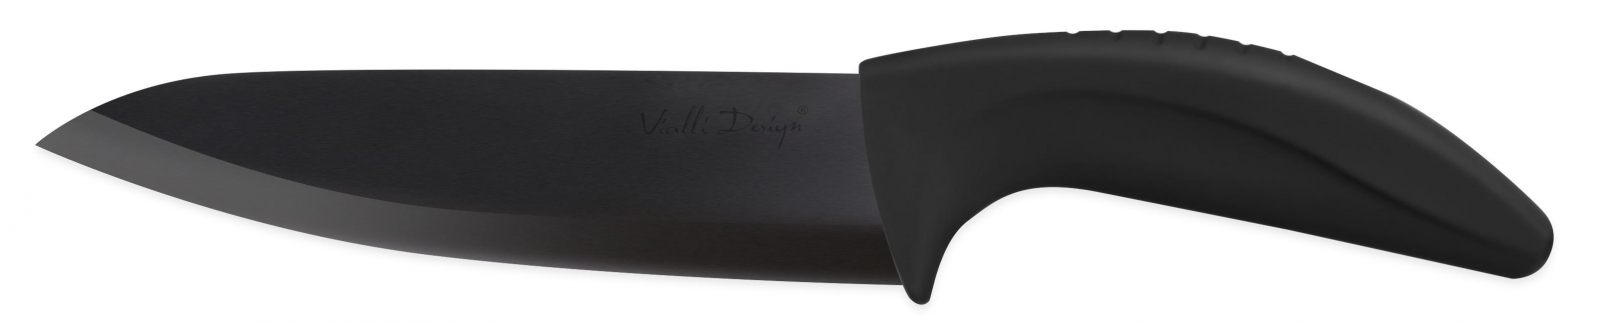 Nóż ceramiczny szefa kuchni 15 cm B150A Vialli Design